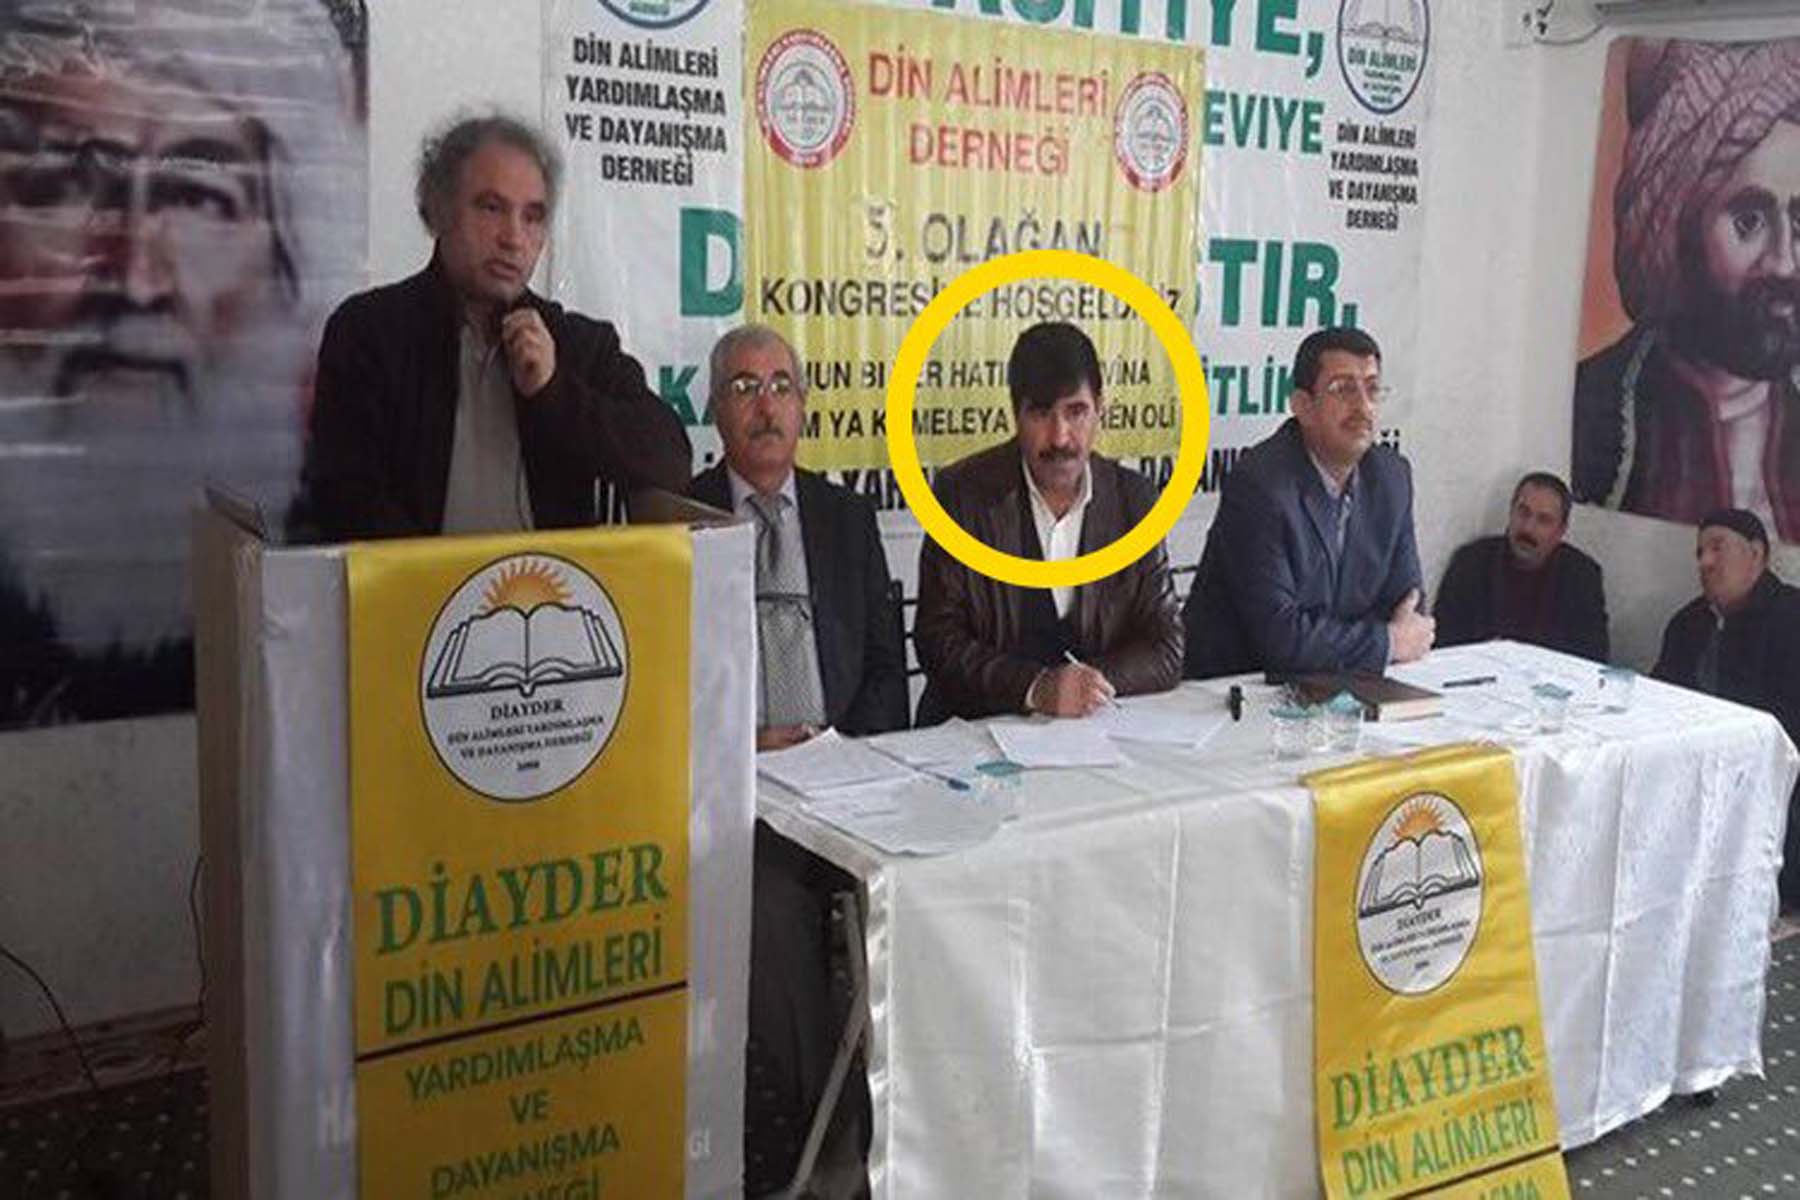 Ekrem İmamoğlu, PKK'nın derneği DİAYDER'in programına katılmış! Eko galiba seni kandırmışlar